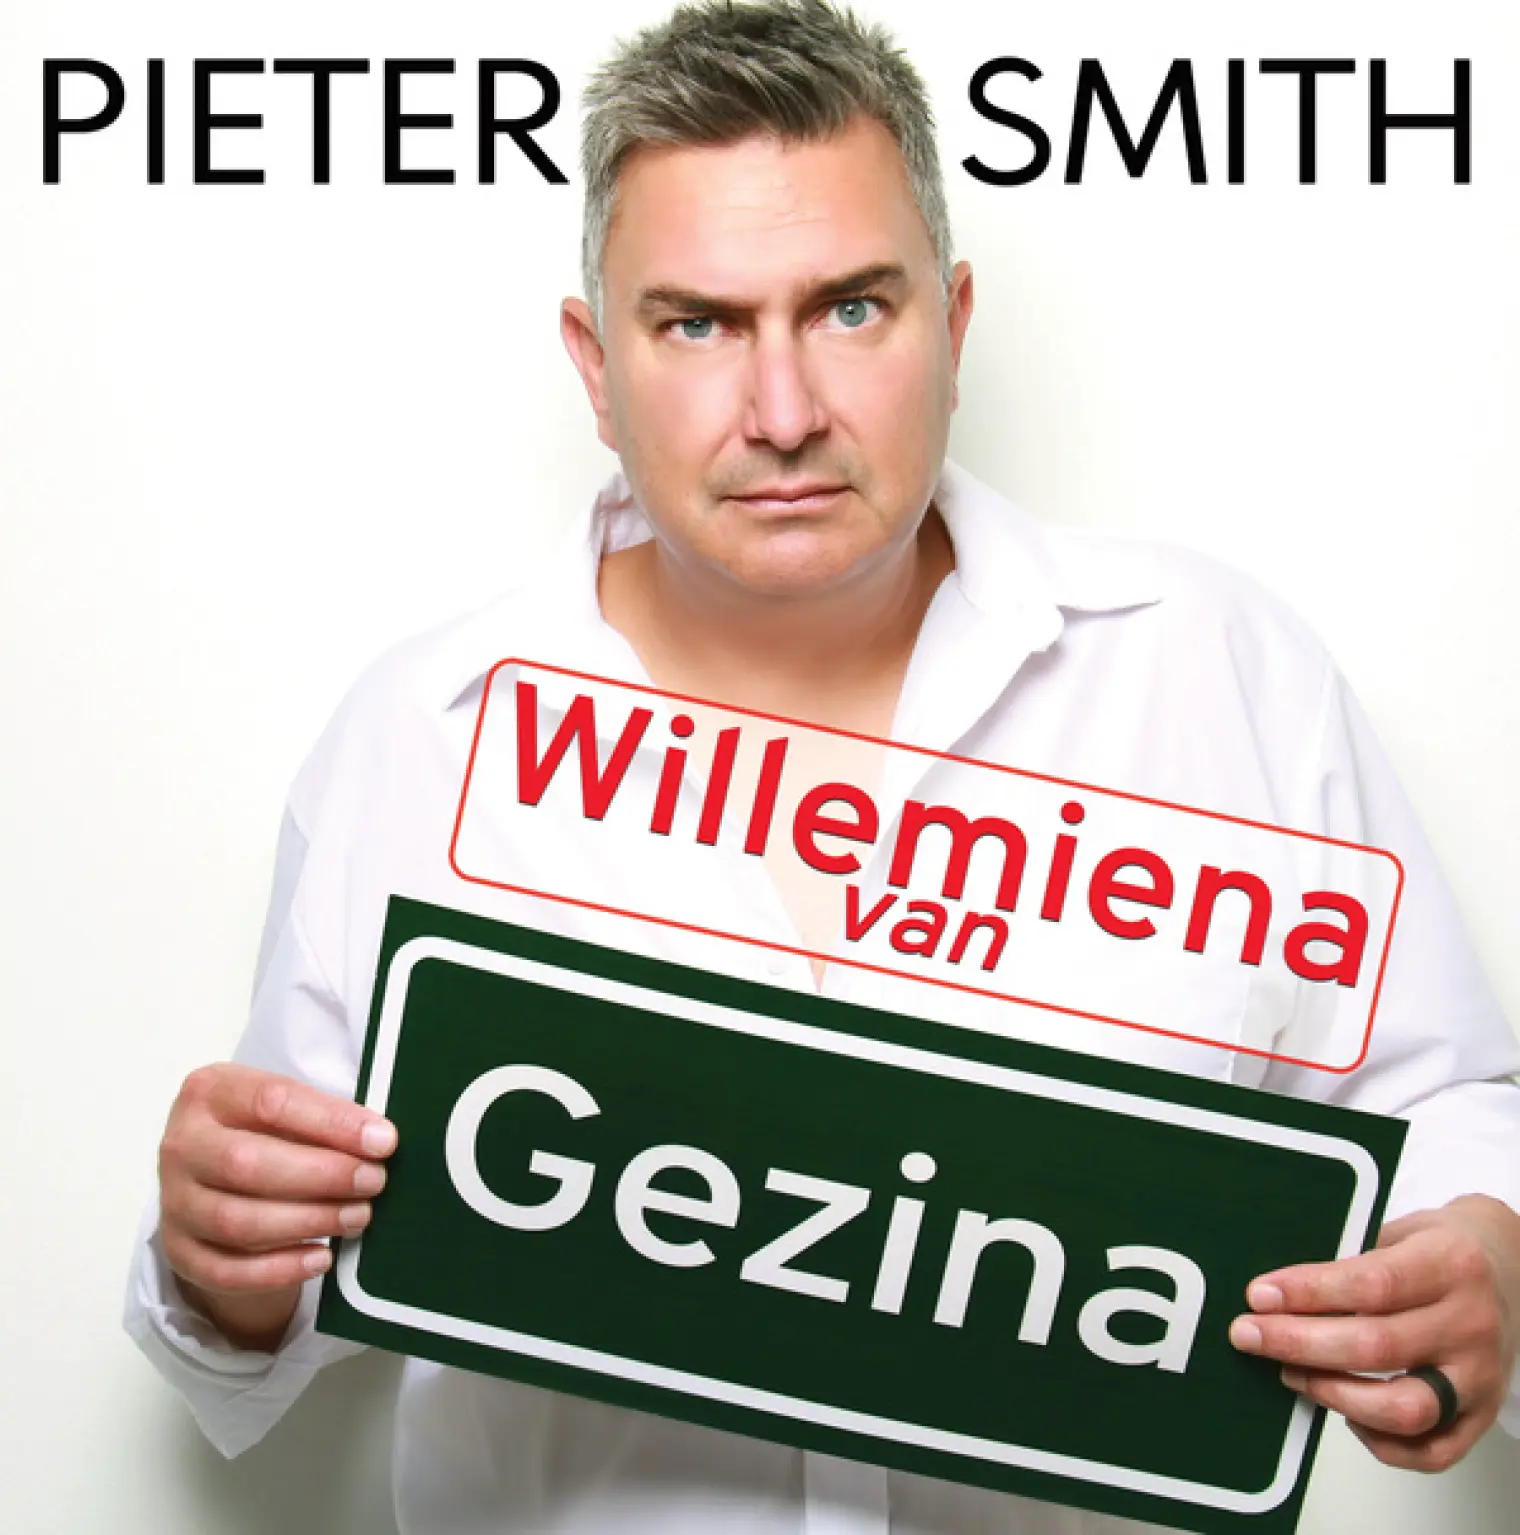 Willemiena Van Gezina -  Pieter Smith 